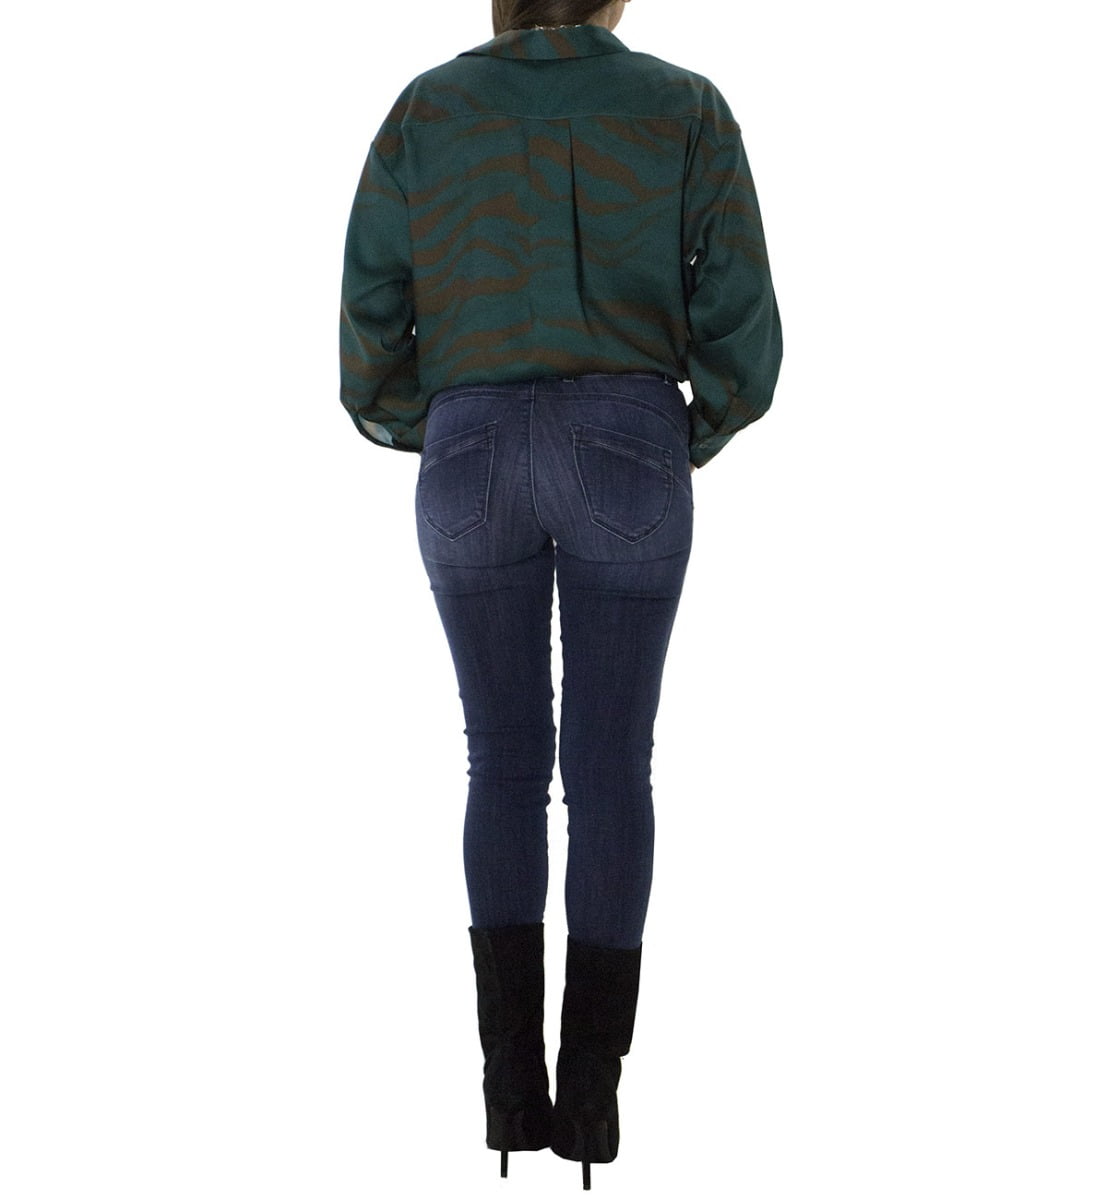 Jeans donna skinny elasticizzato lavaggio 2 medio modello 5 tasche effetto push up